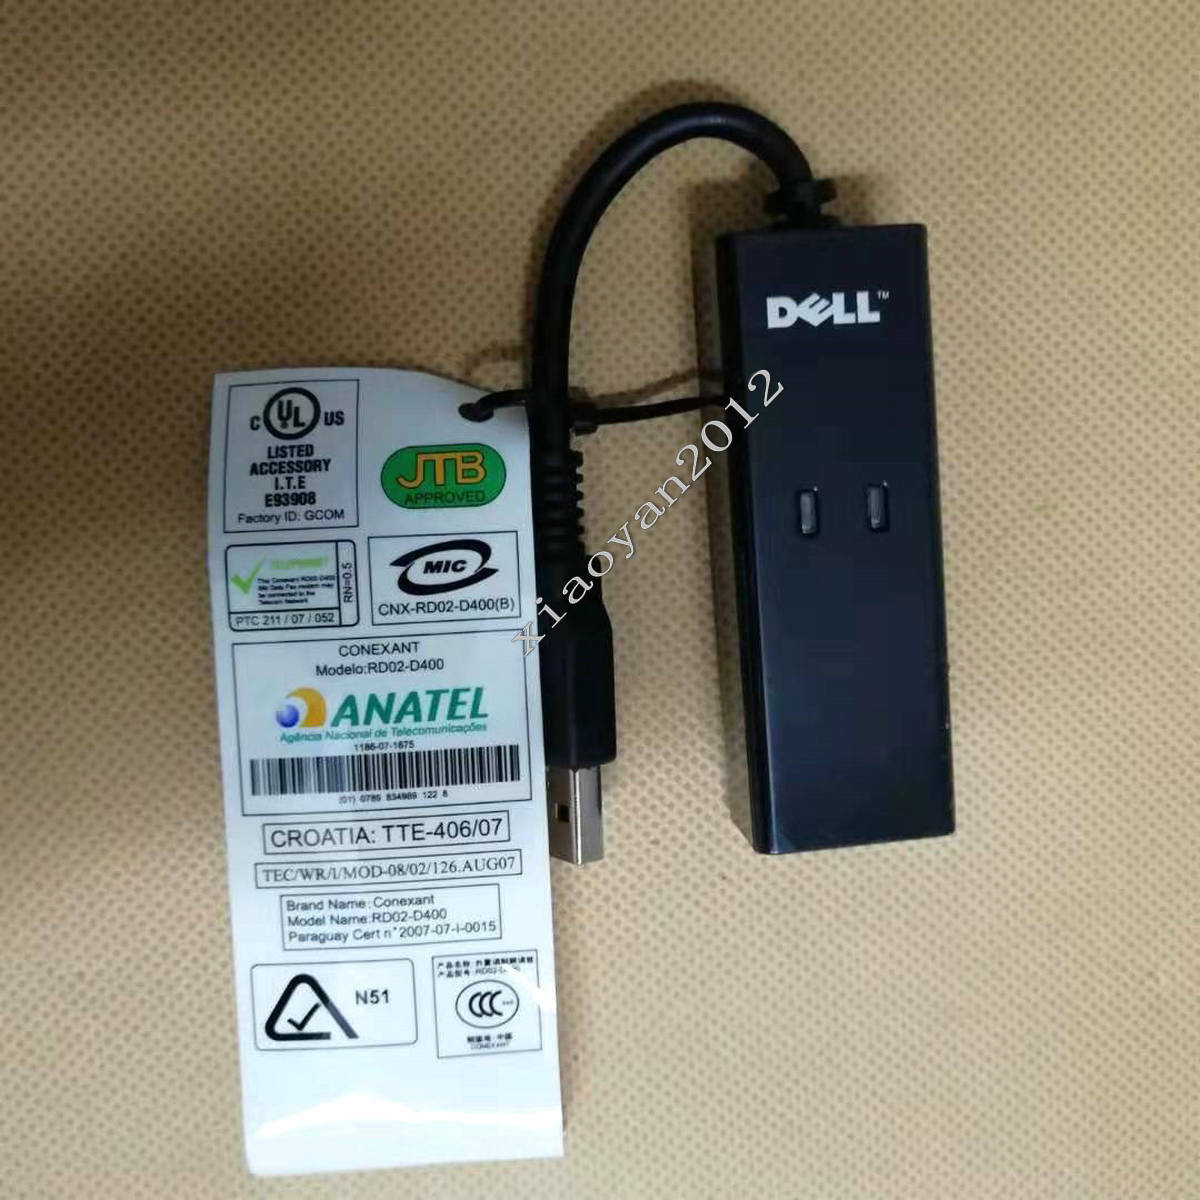 Dell Dell Rd02-d400 Usb External 56k Cat Modem Modem Fax Narrowband Cat